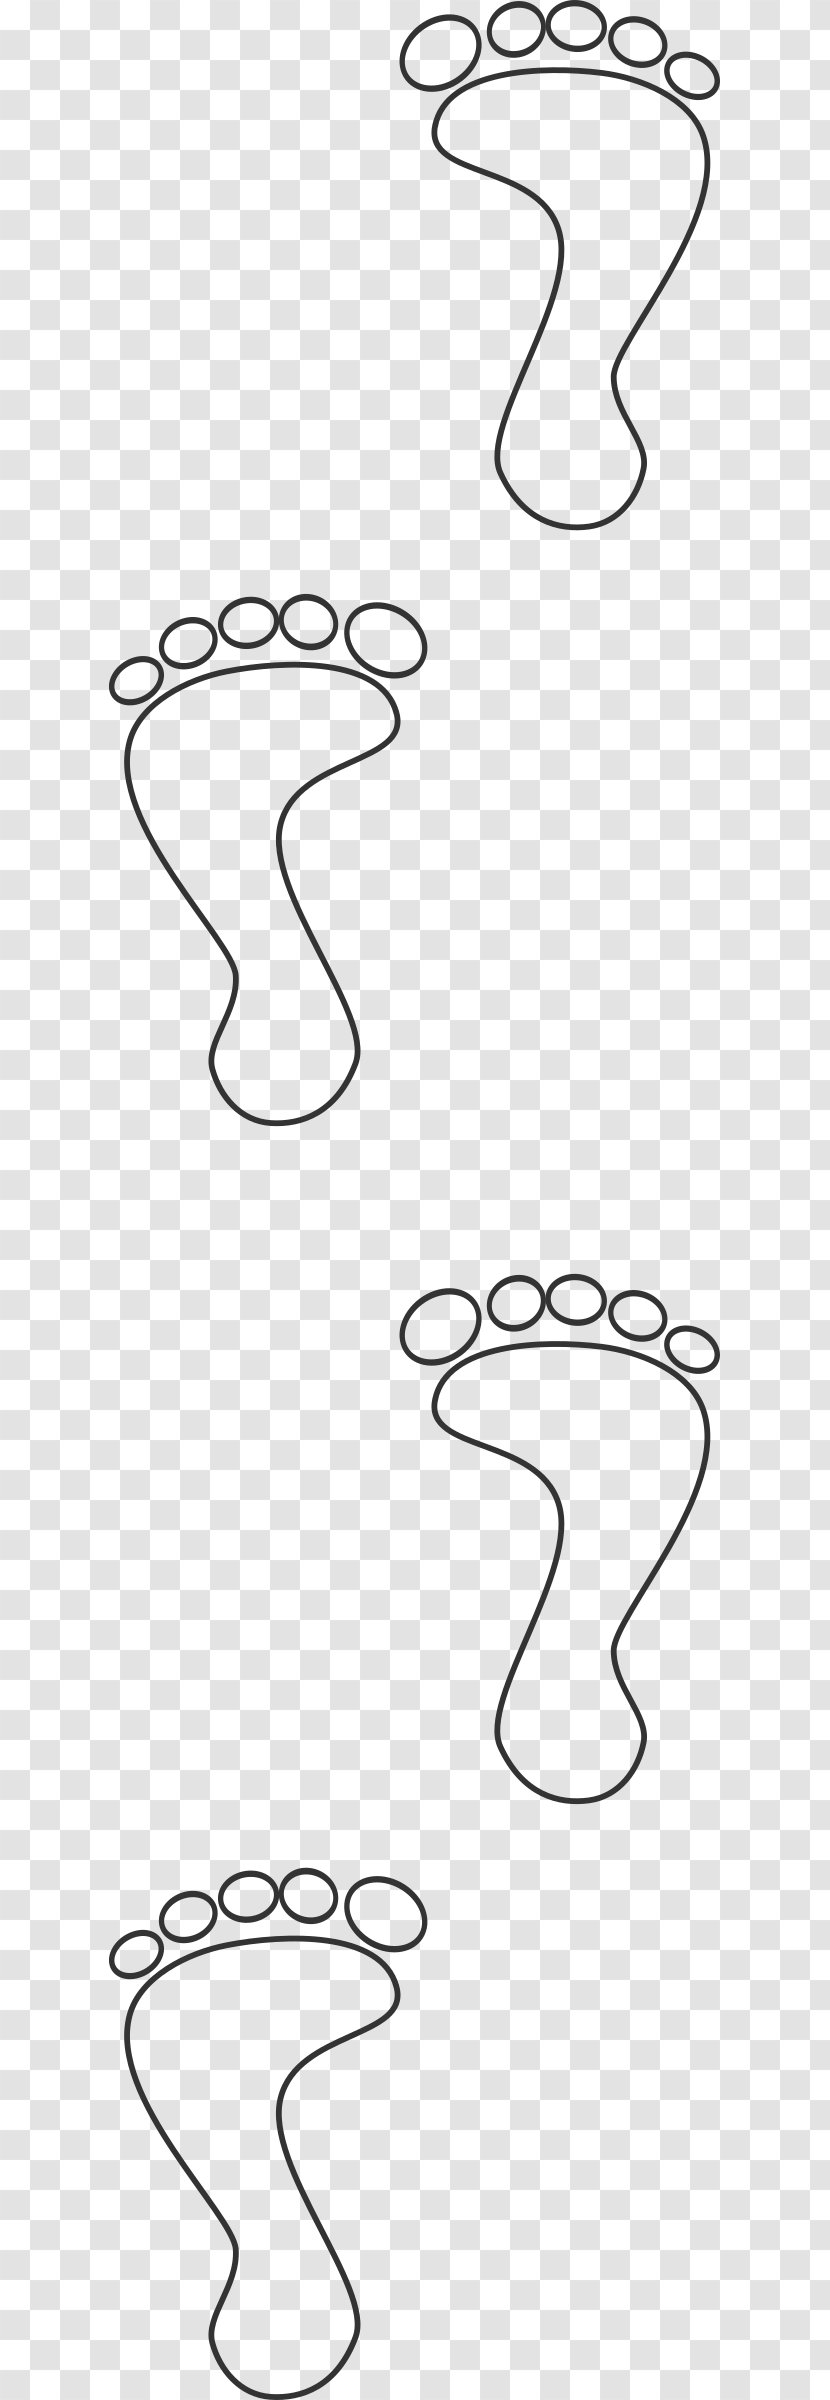 Footprint Clip Art - Foot - Footprints Transparent PNG